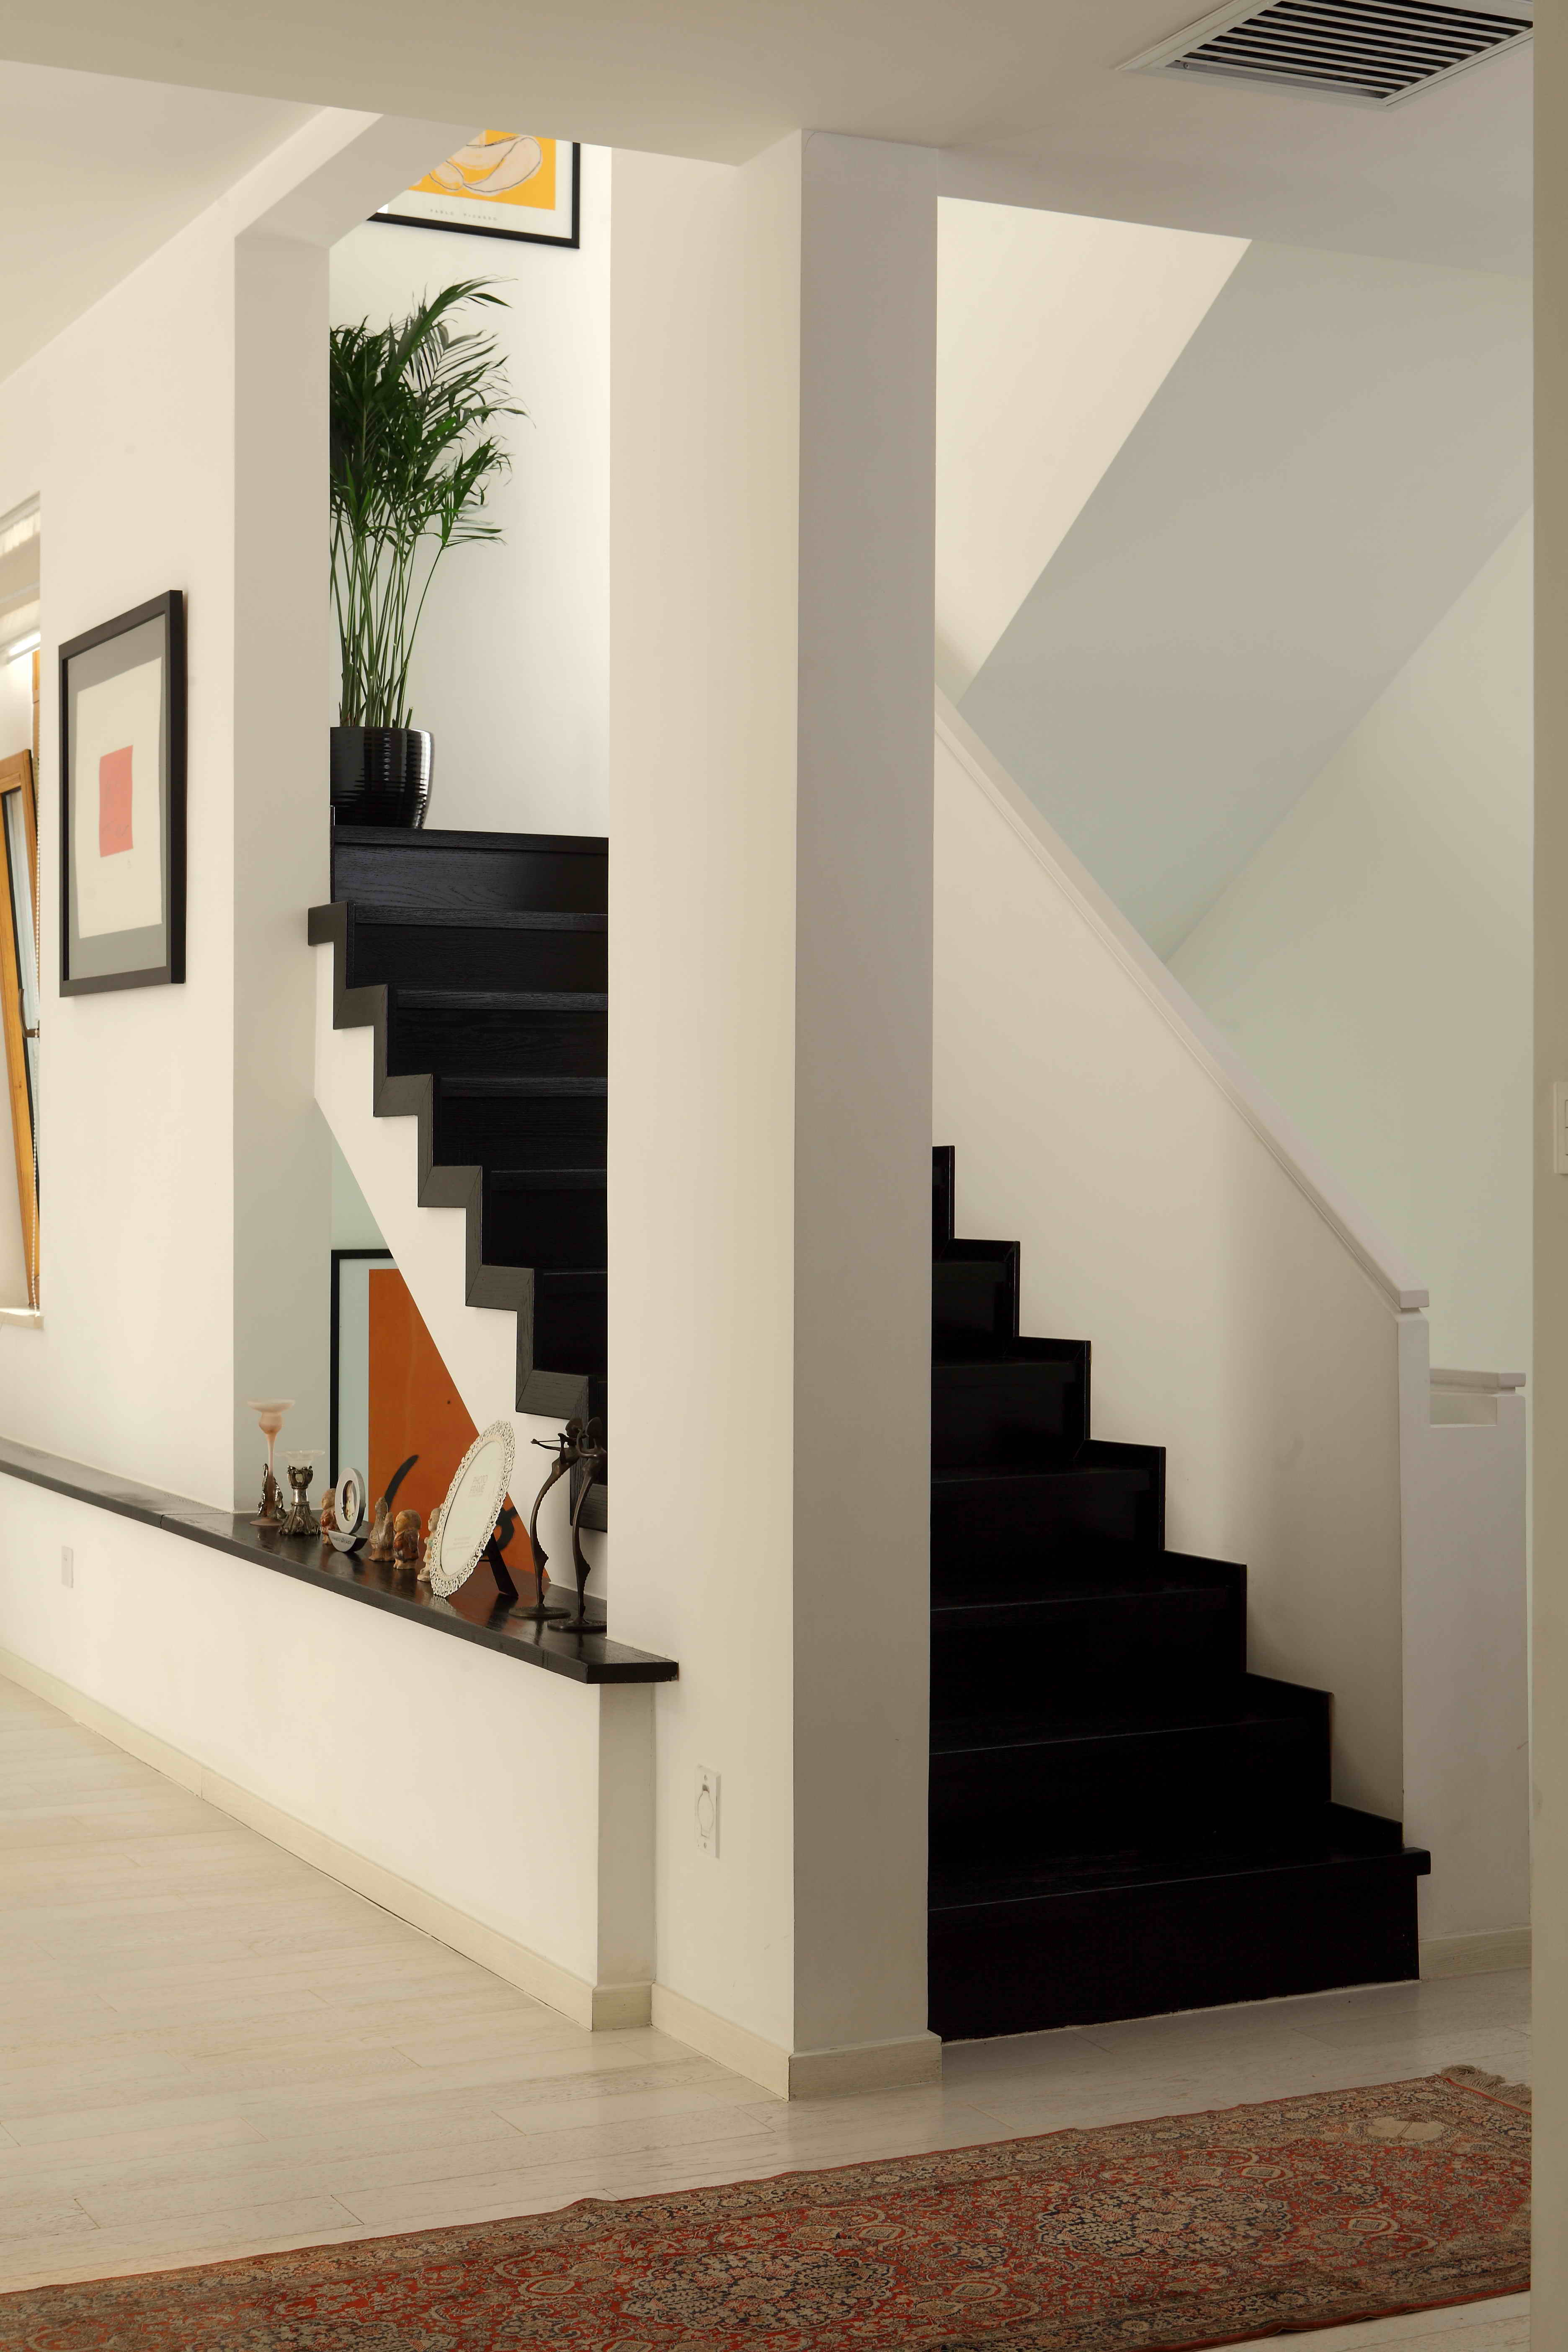 简约 别墅 龙湾别墅 龙湾合院 装修设计 楼梯图片来自尚层装饰张迪在龙湾合院  376平米  现代简约的分享